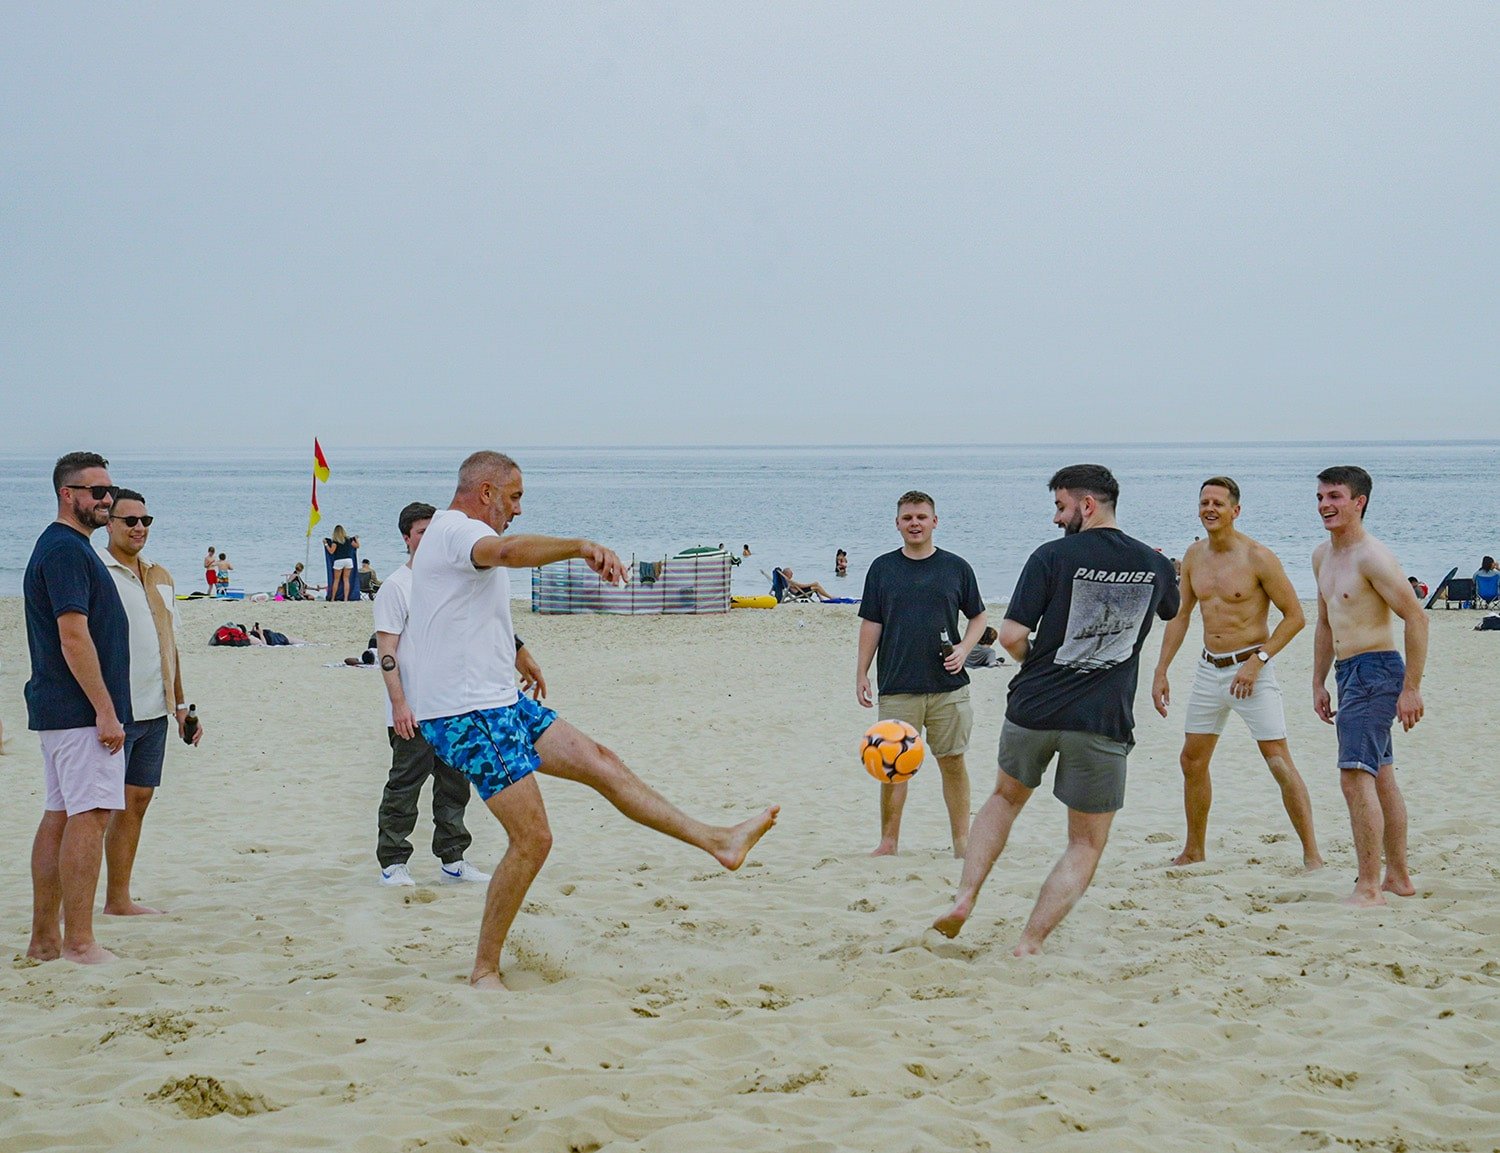 Andy Strong playing football at sandbanks beach